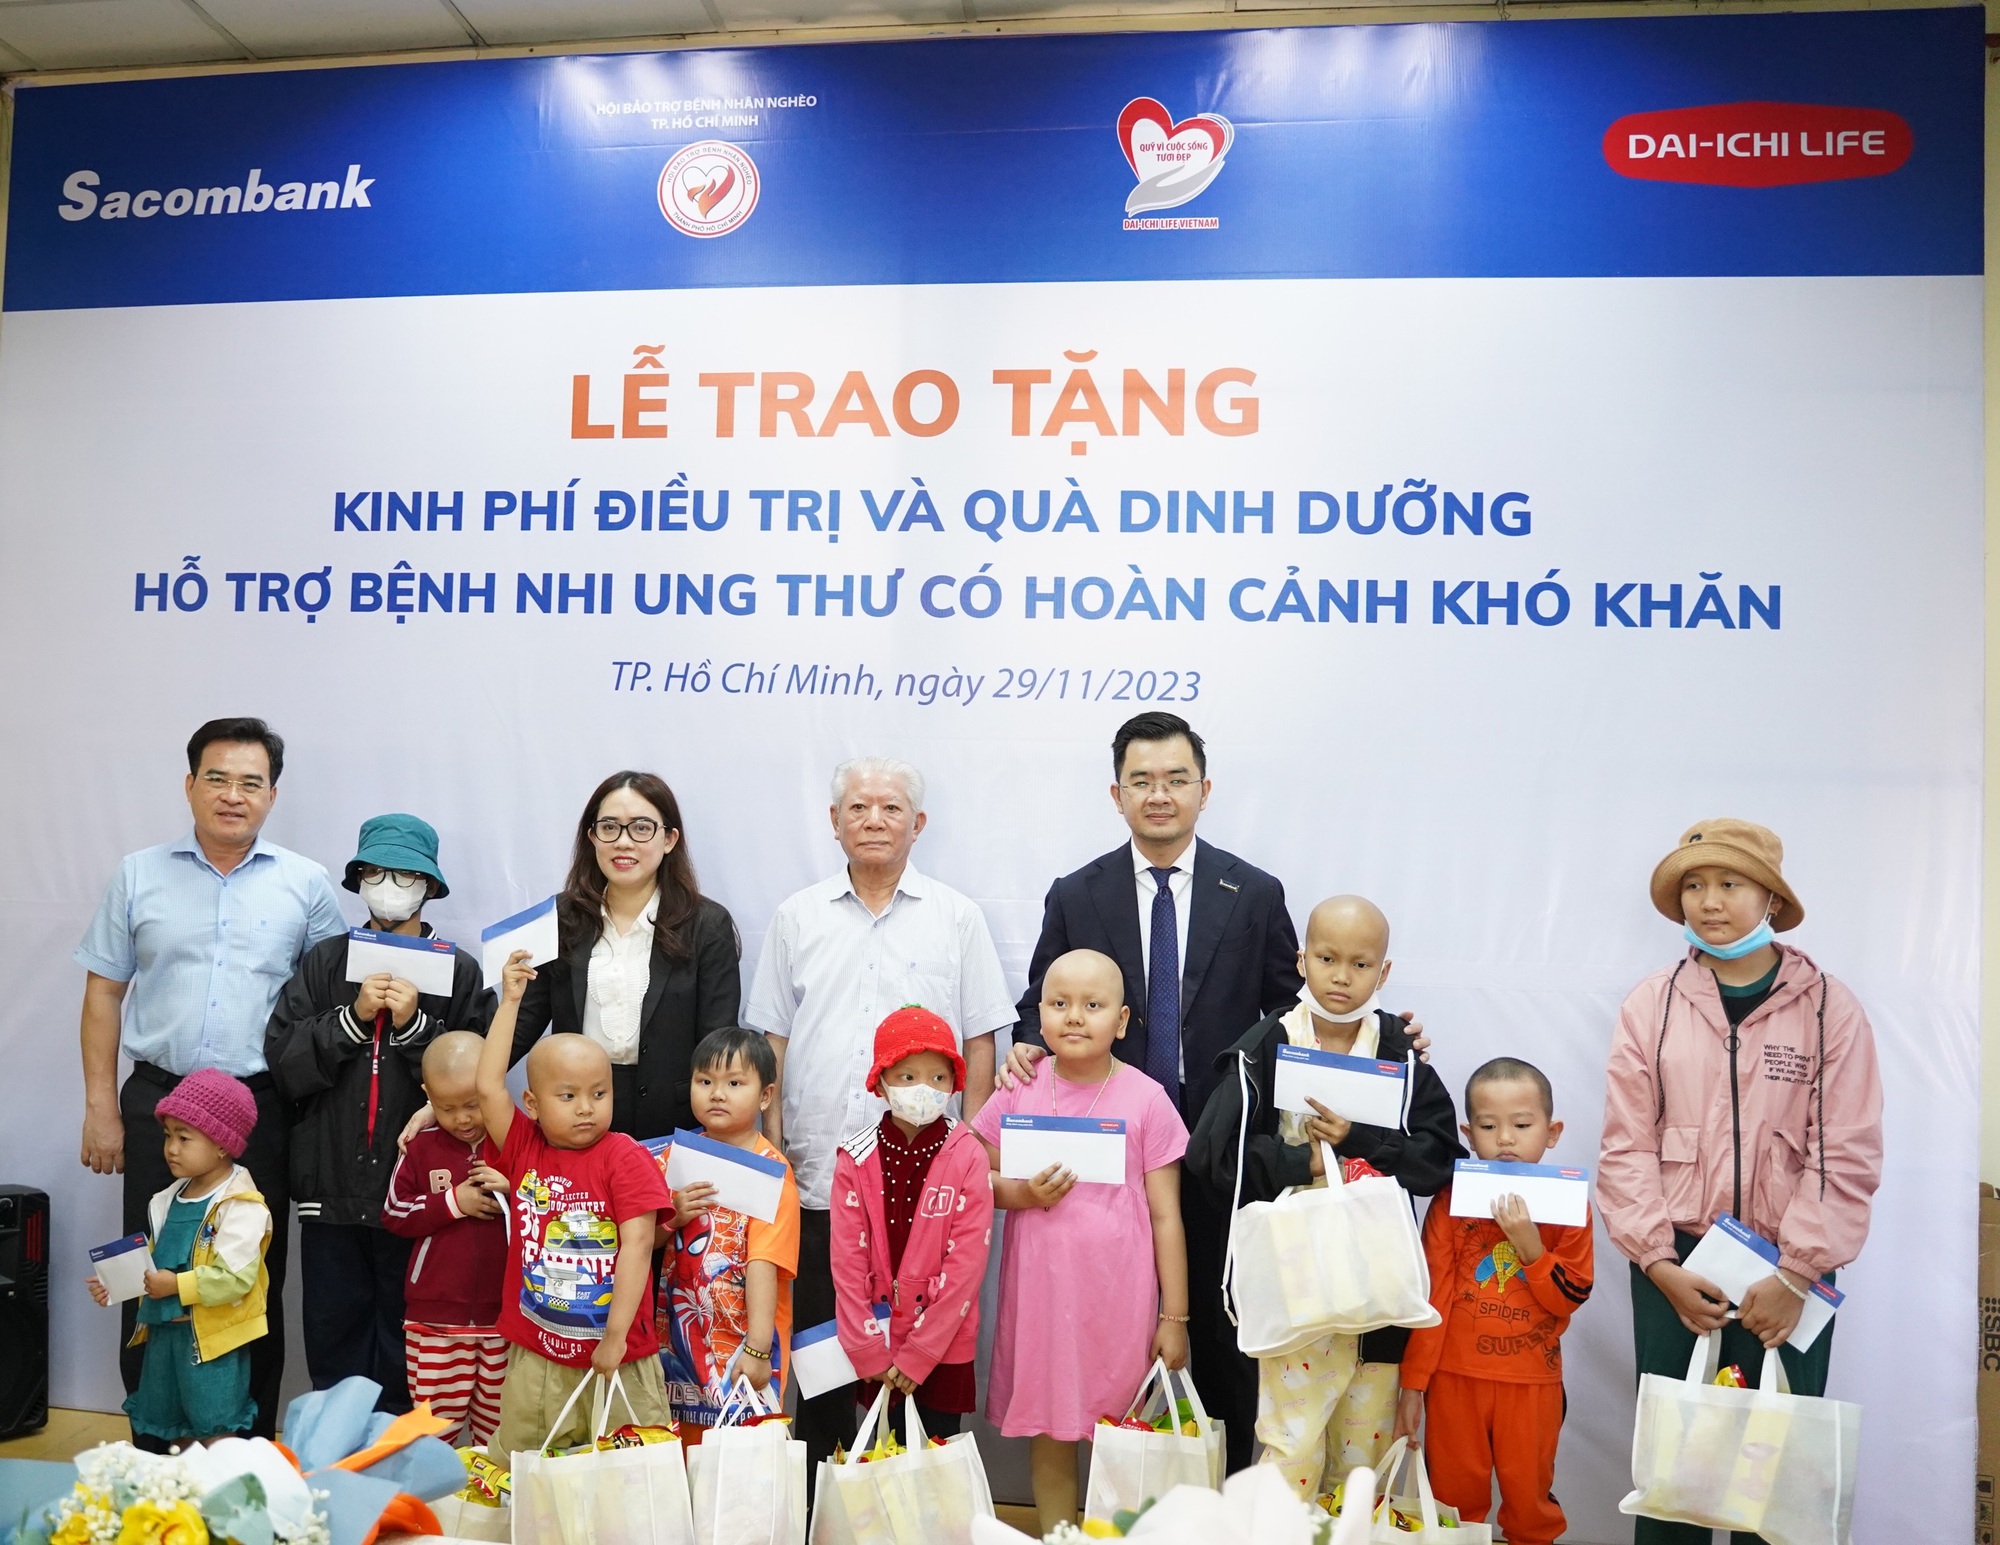 SACOMBANK và DAI-ICHI LIFE Việt Nam tiếp tục đồng hành với bệnh nhân nghèo - Ảnh 1.